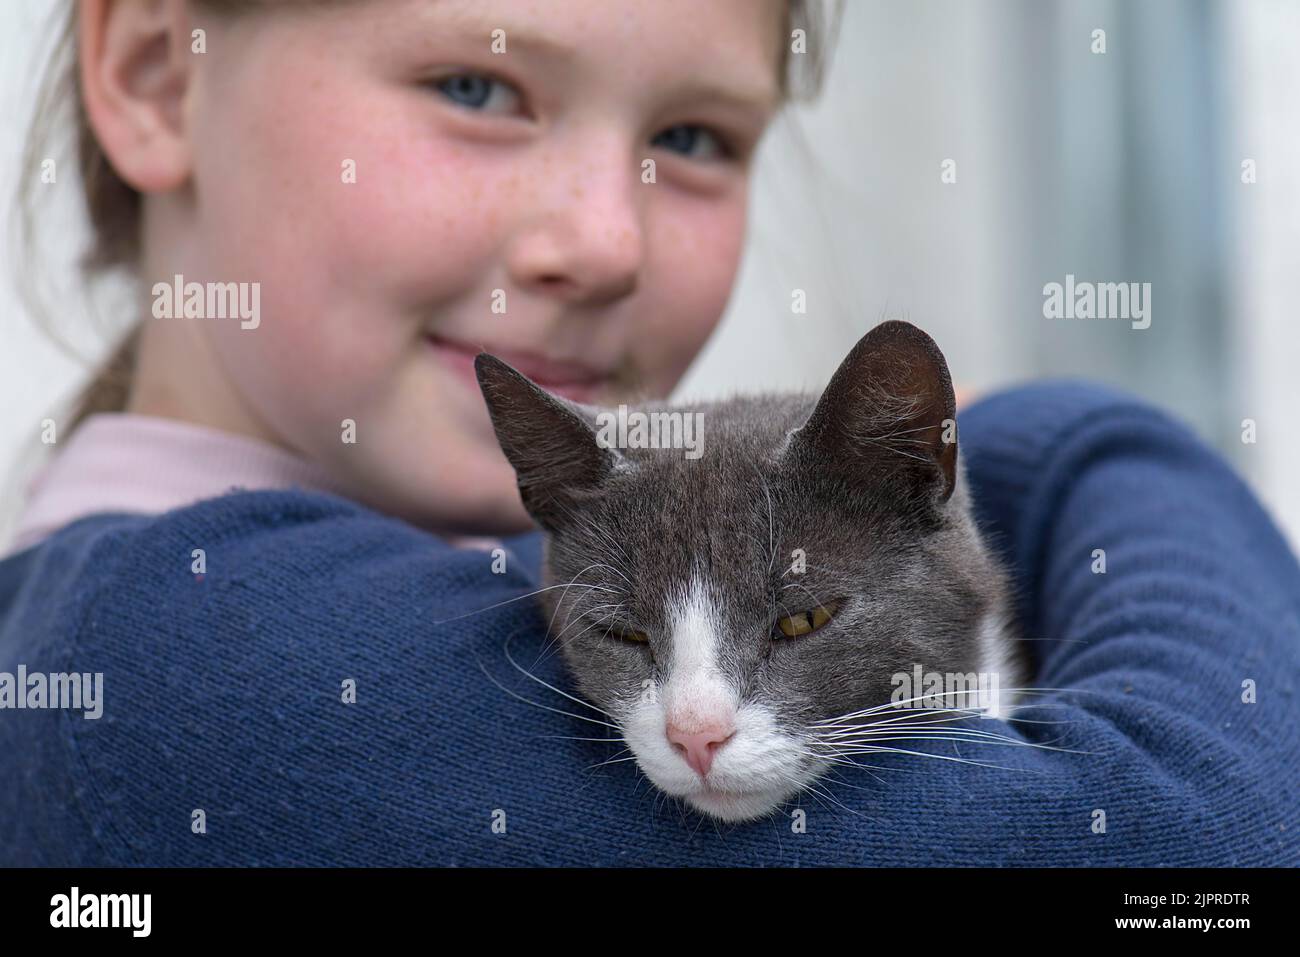 Ragazza, 10 anni, in possesso di un gatto, Meclemburgo-Pomerania occidentale, Germania Foto Stock